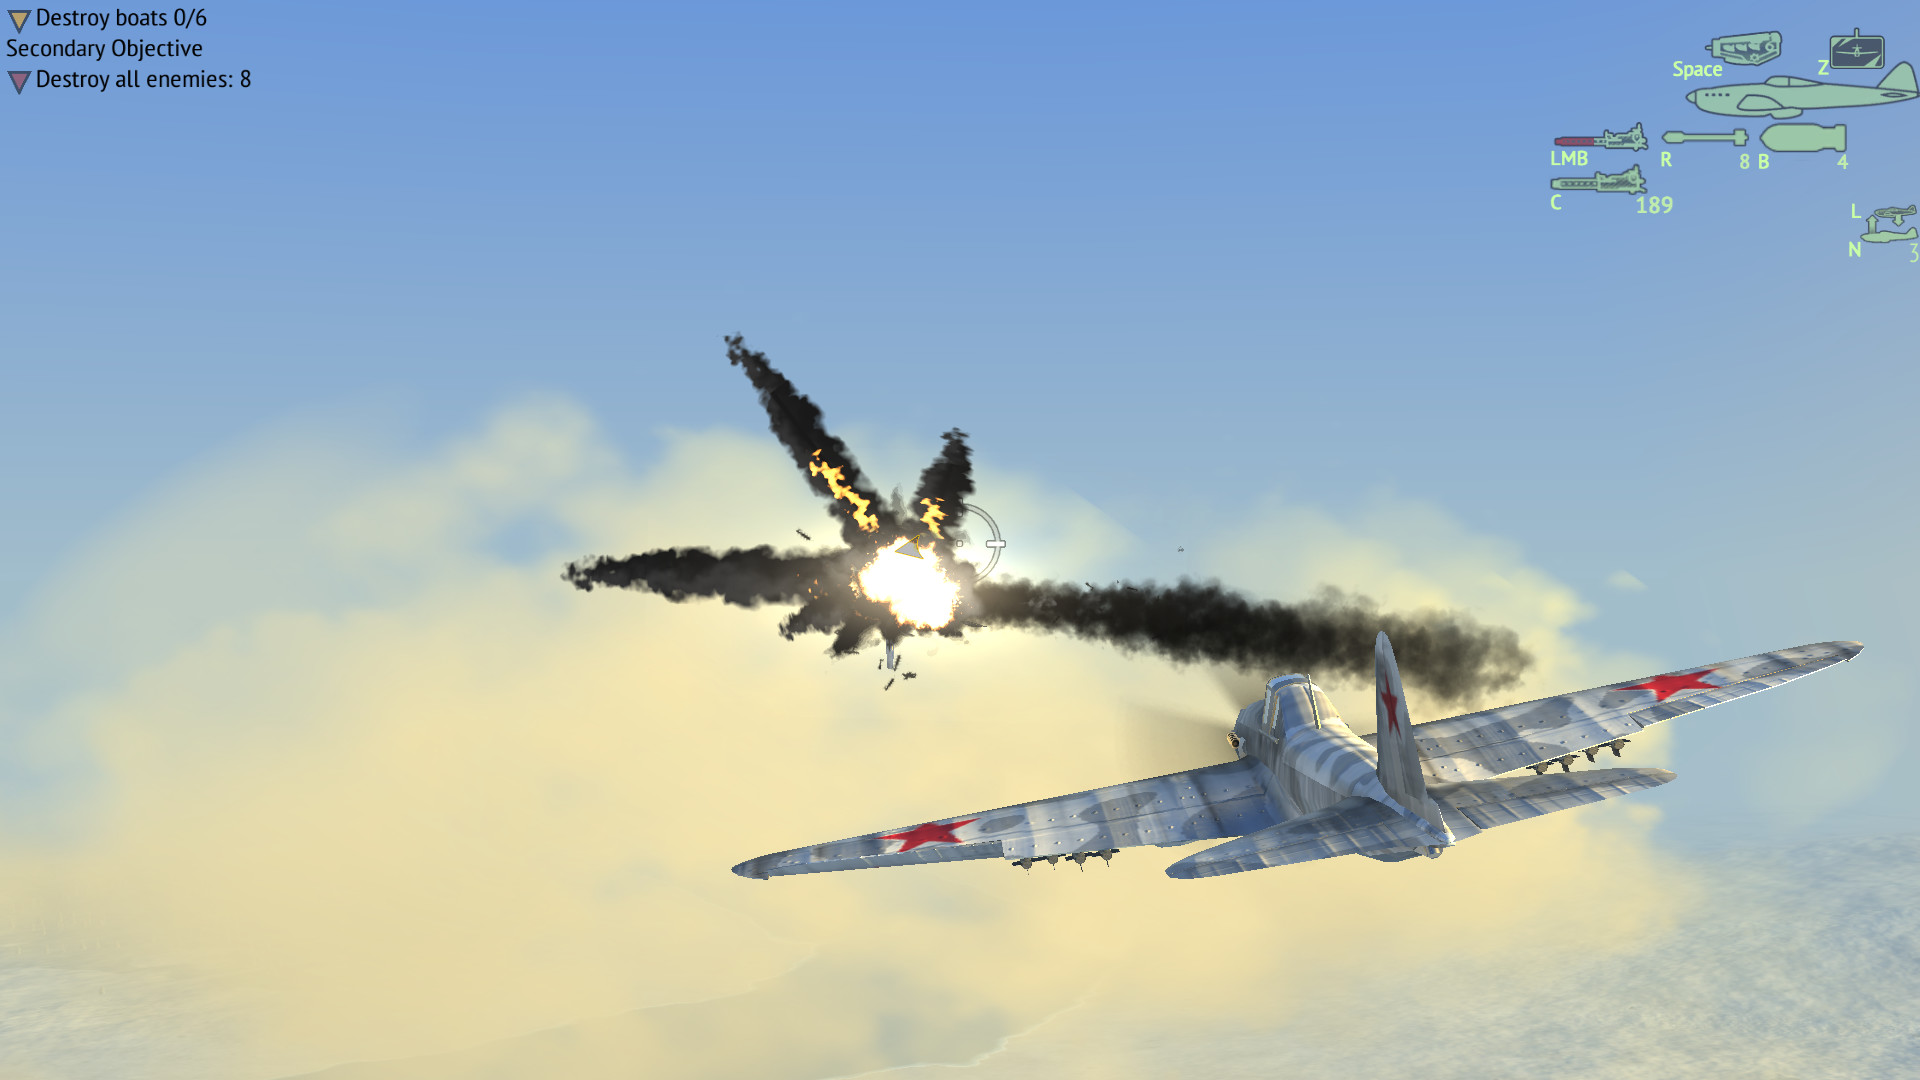 World of Warplanes on Steam